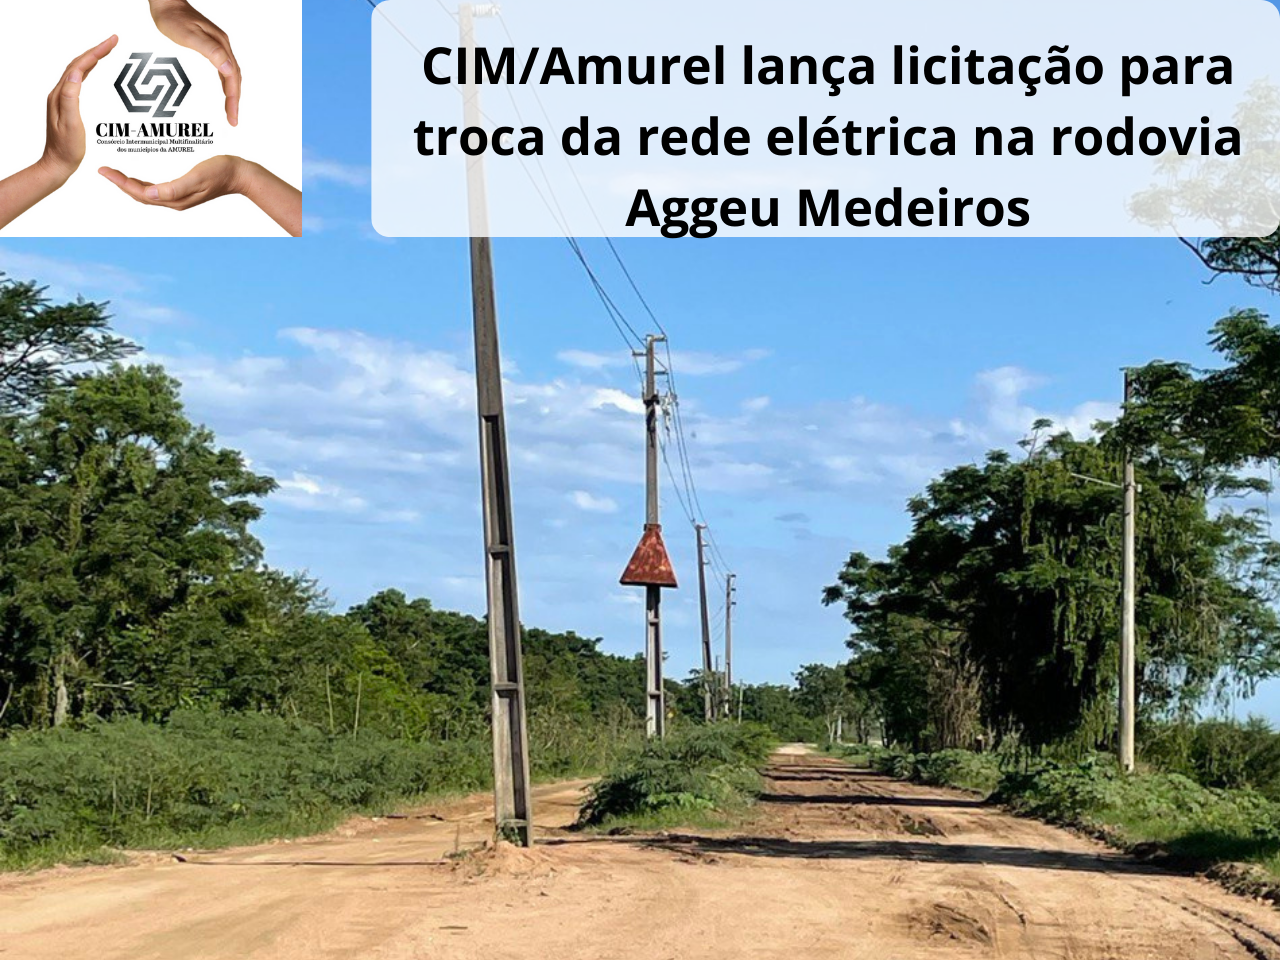 You are currently viewing CIM/Amurel lança licitação para troca da rede elétrica na rodovia Aggeu Medeiros